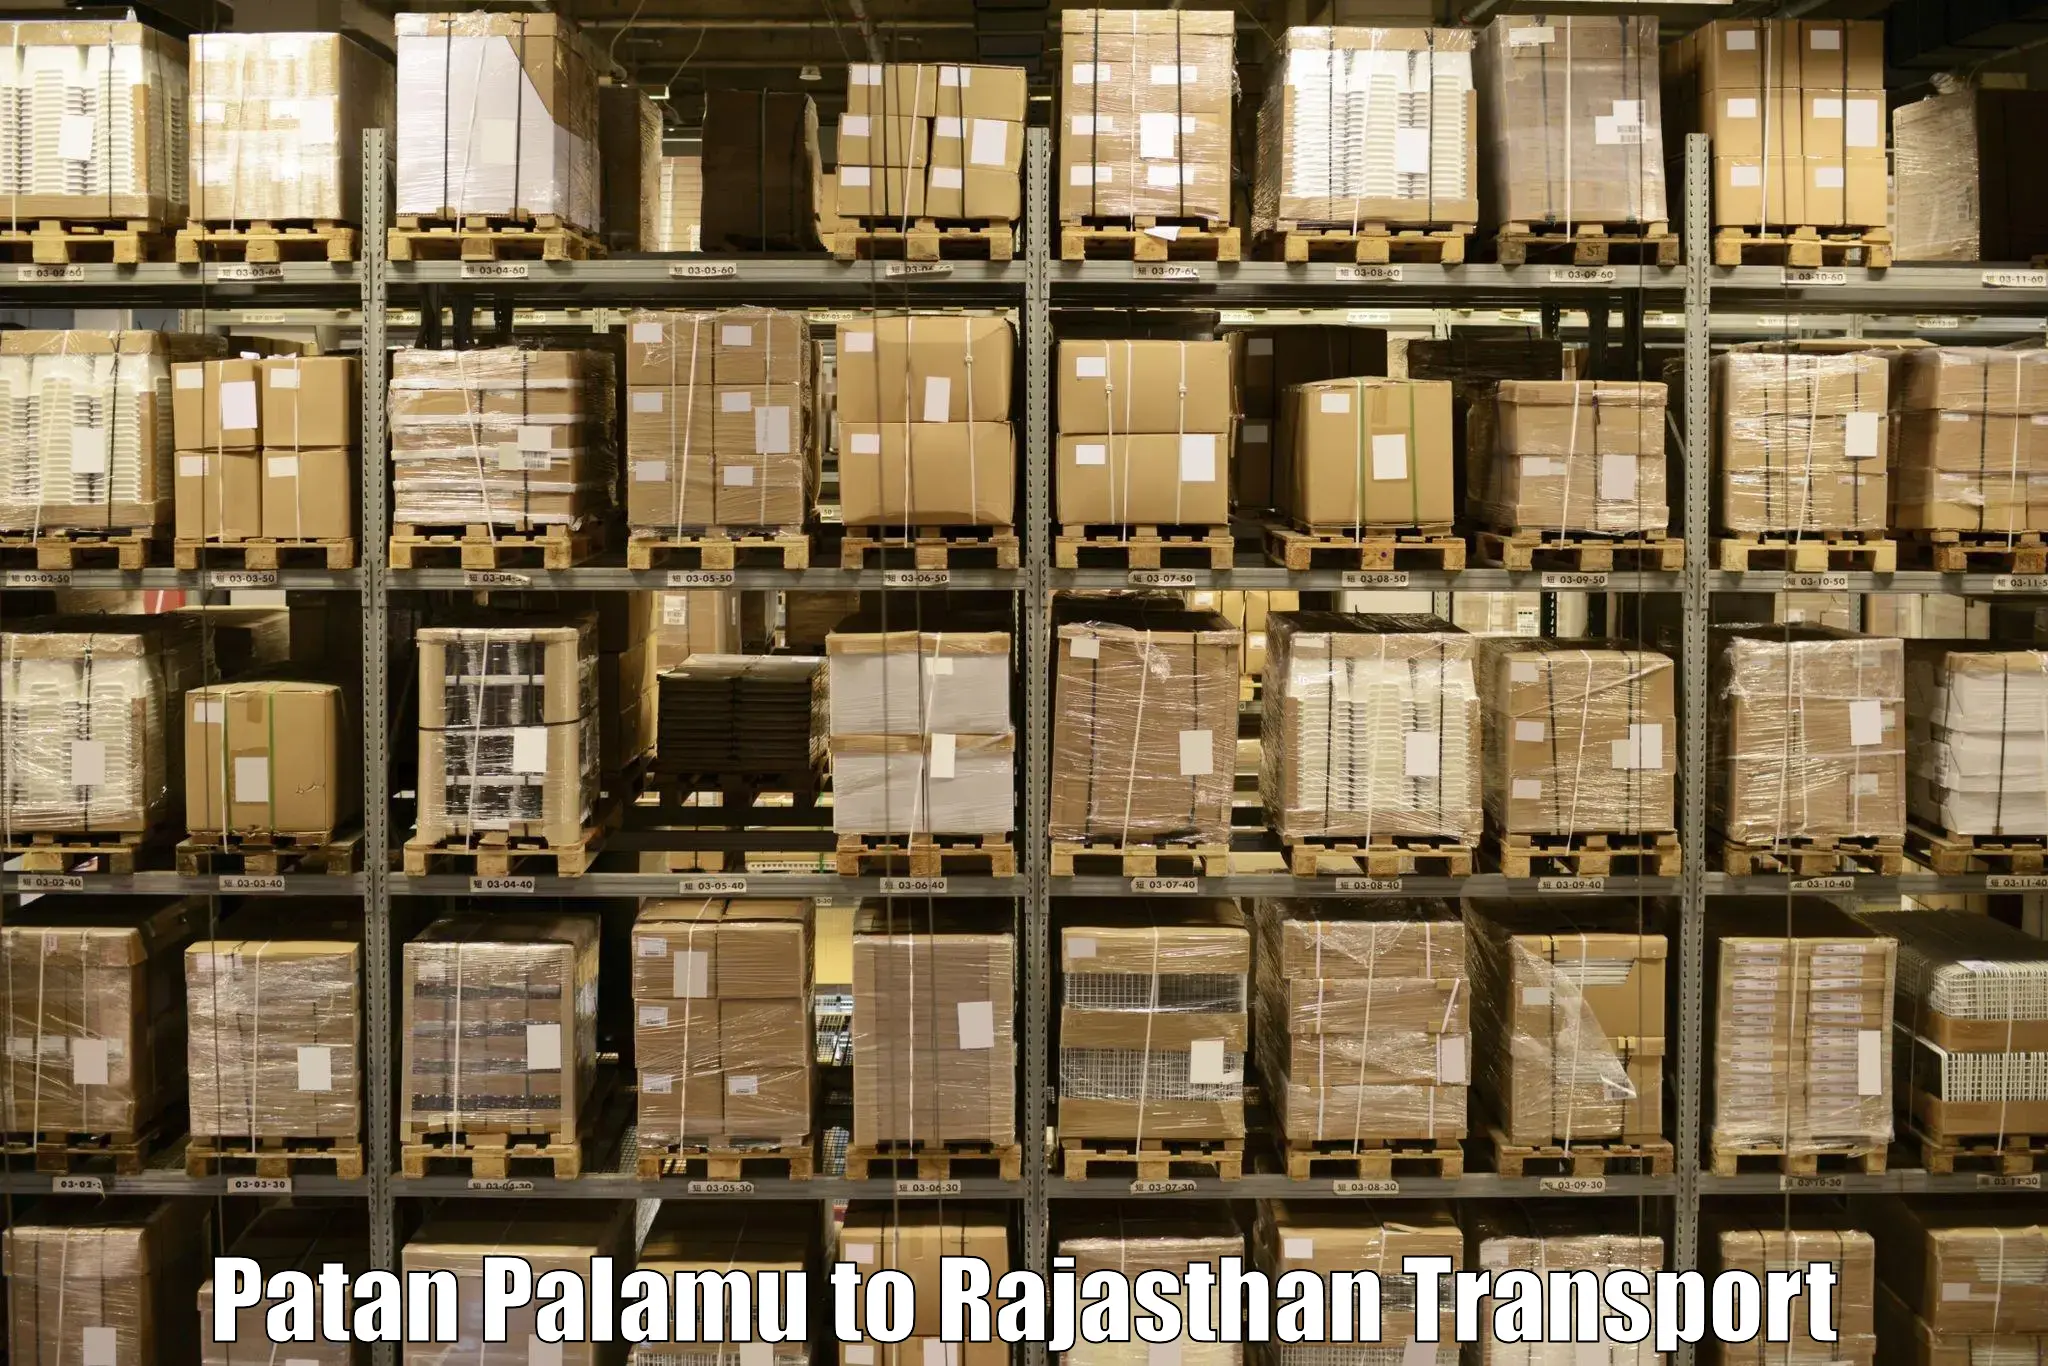 Daily transport service Patan Palamu to Udaipurwati